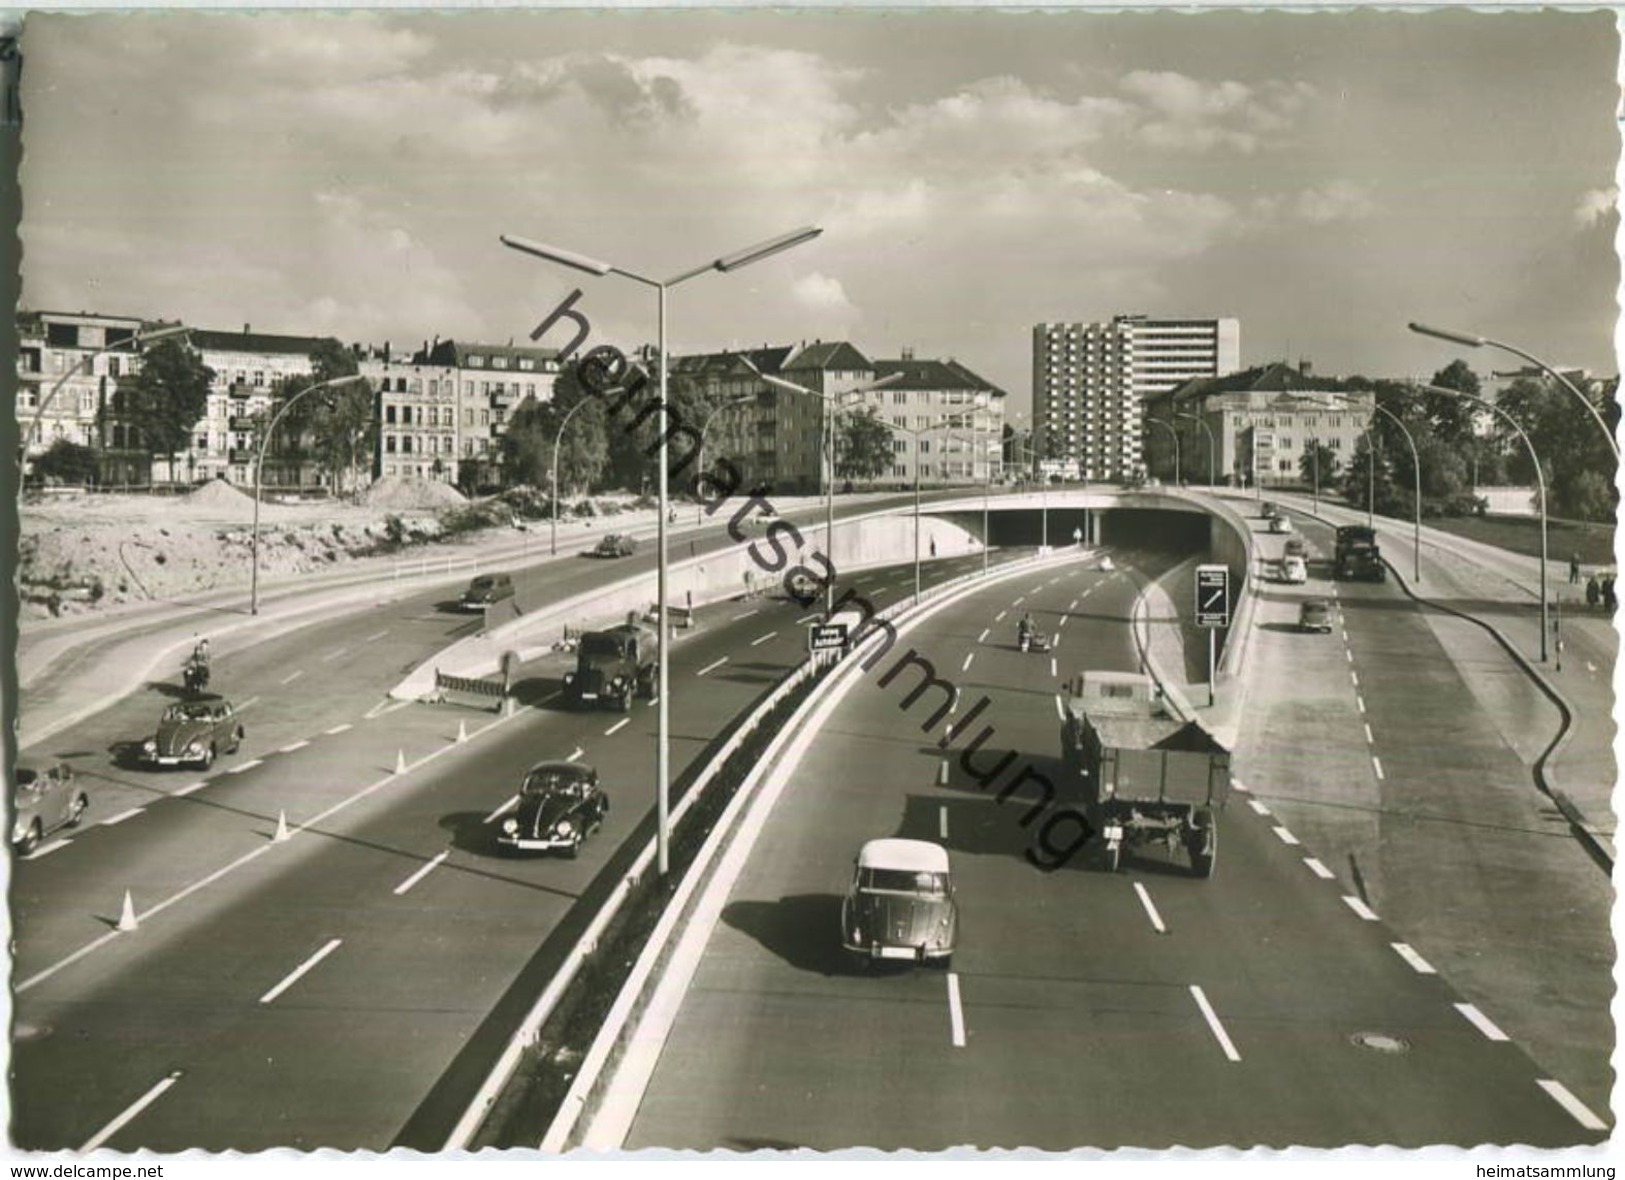 Berlin - Halensee - Stadtautobahn - Foto-Ansichtskarte Grossformat 50er Jahre - Verlag Hans Andres - Halensee